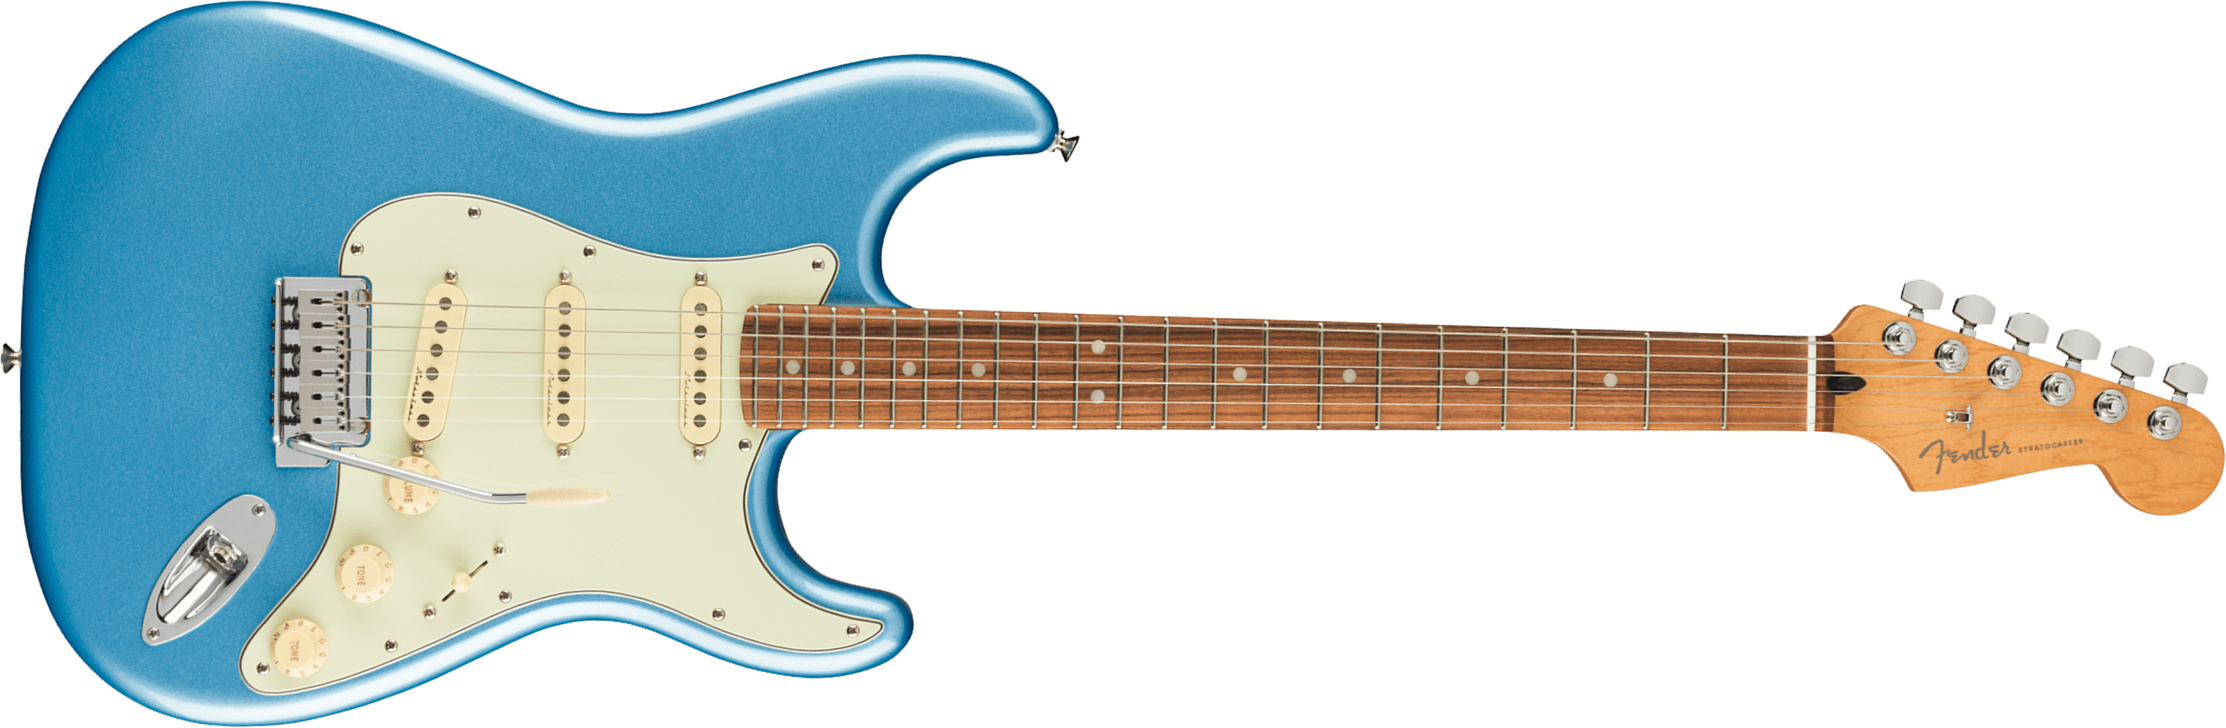 Fender Strat Player Plus Mex 3s Trem Pf - Opal Spark - Elektrische gitaar in Str-vorm - Main picture